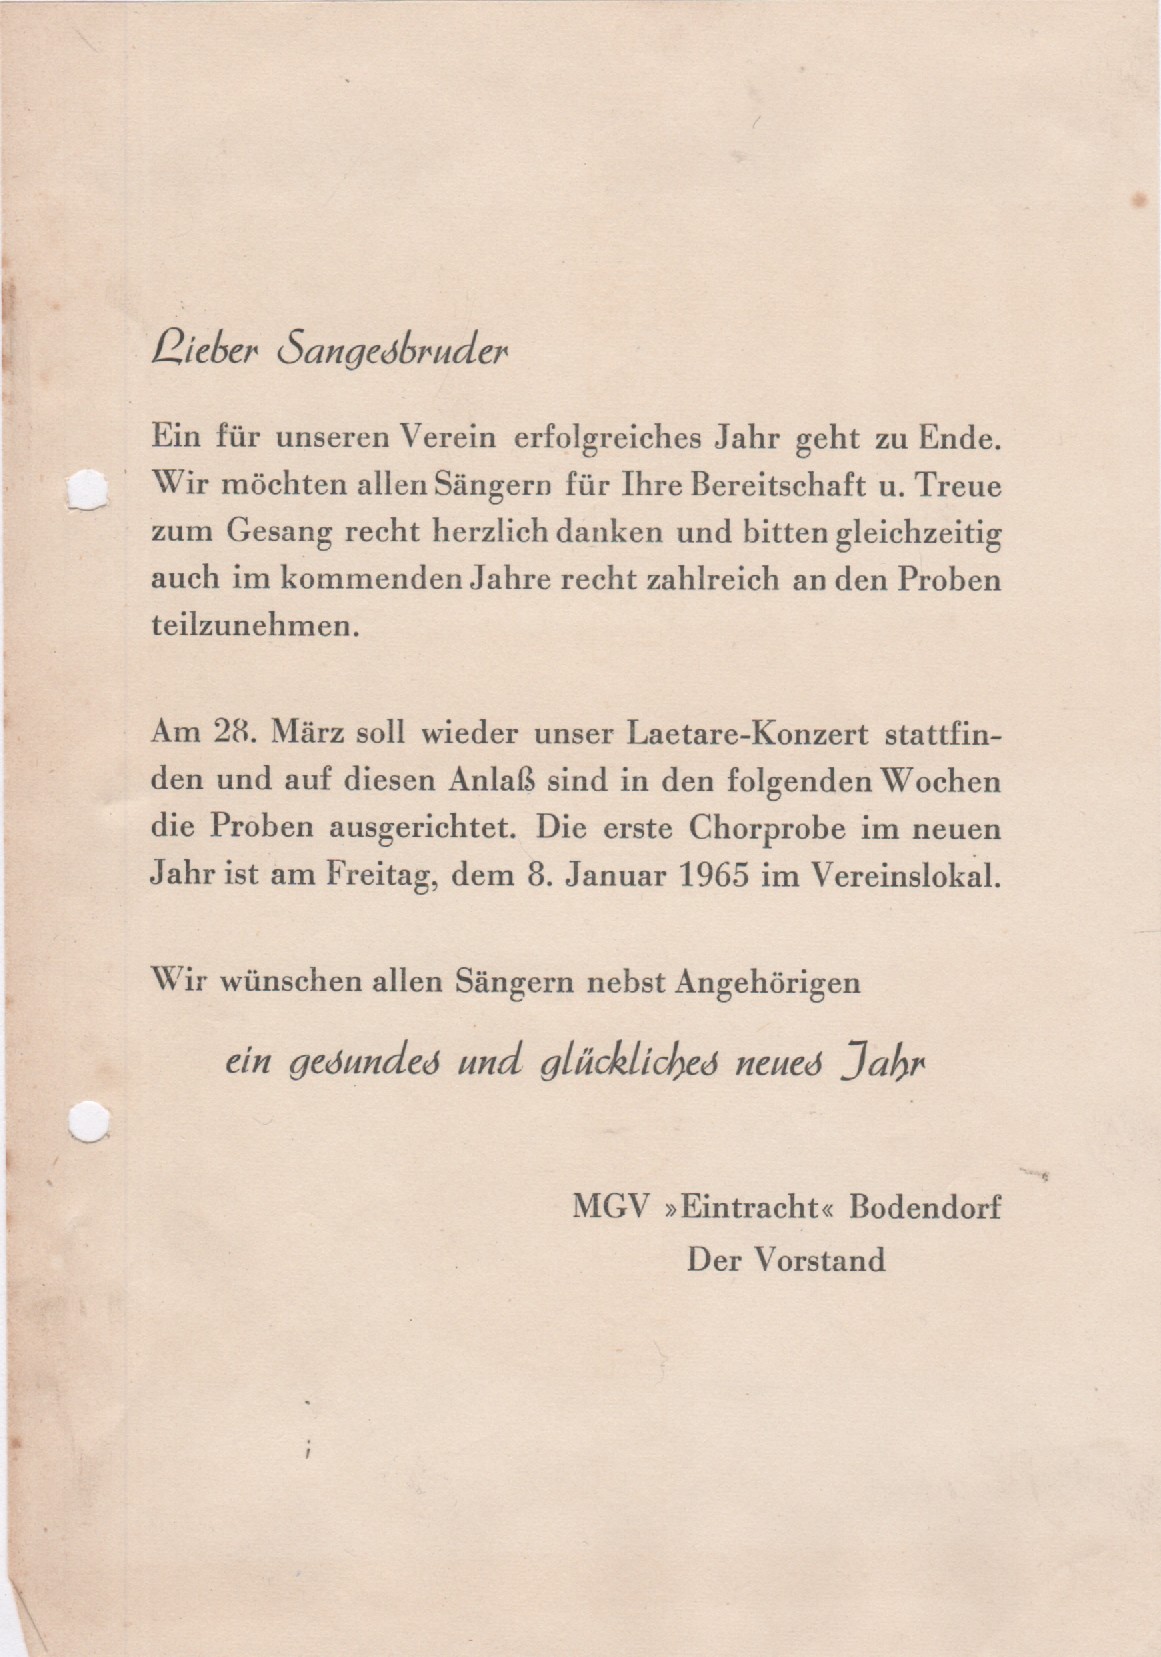 Dankesbrief des Vorstandes MGV Eintrach zum Jahreswechsel 1964/1965 (Heimatmuseum und -Archiv Bad Bodendorf CC BY-NC-SA)